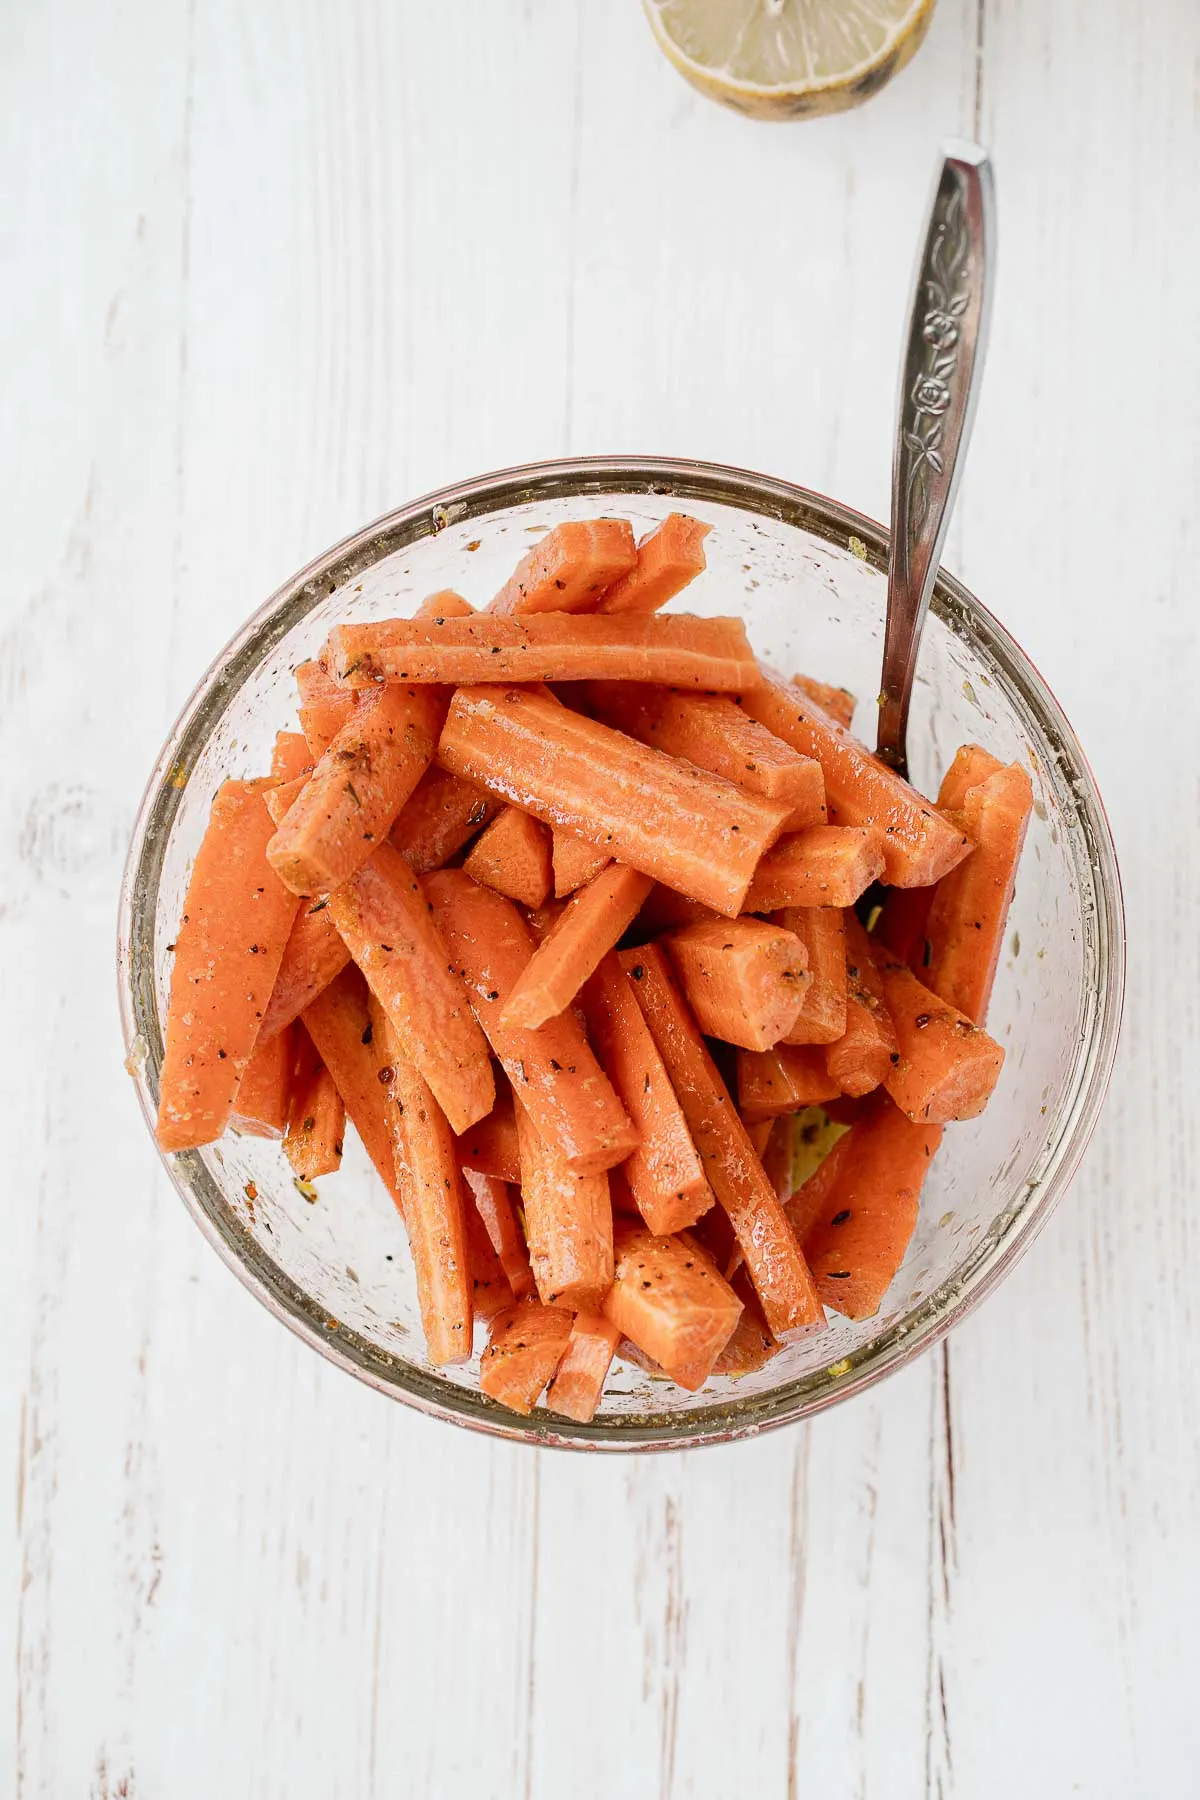 Seasoned carrots in a bowl.